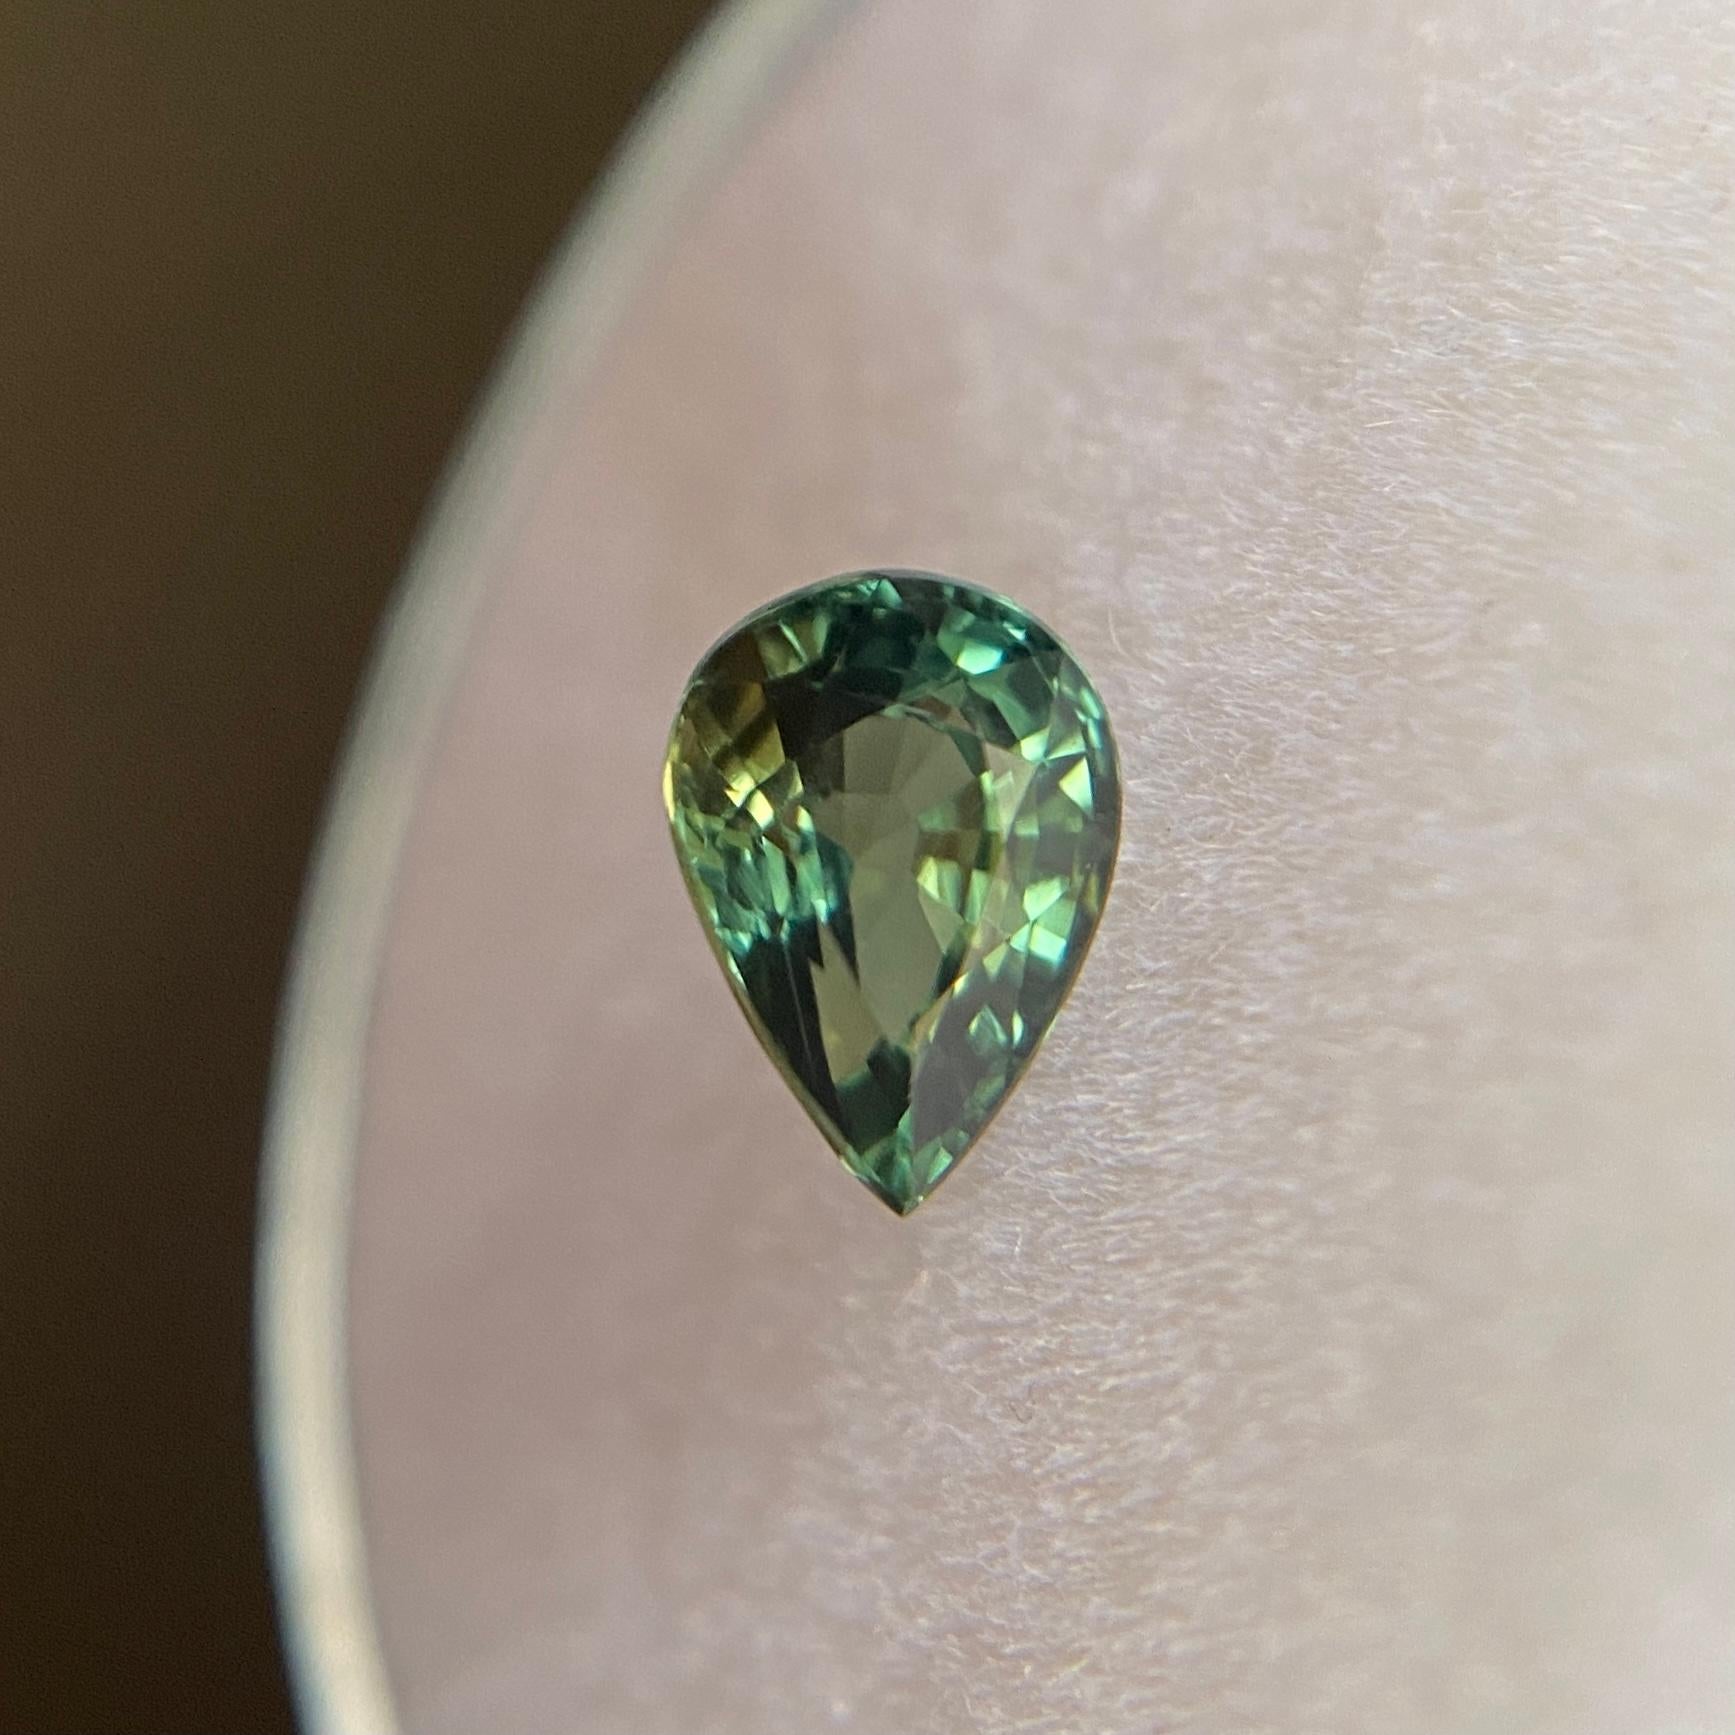 tear shaped gem